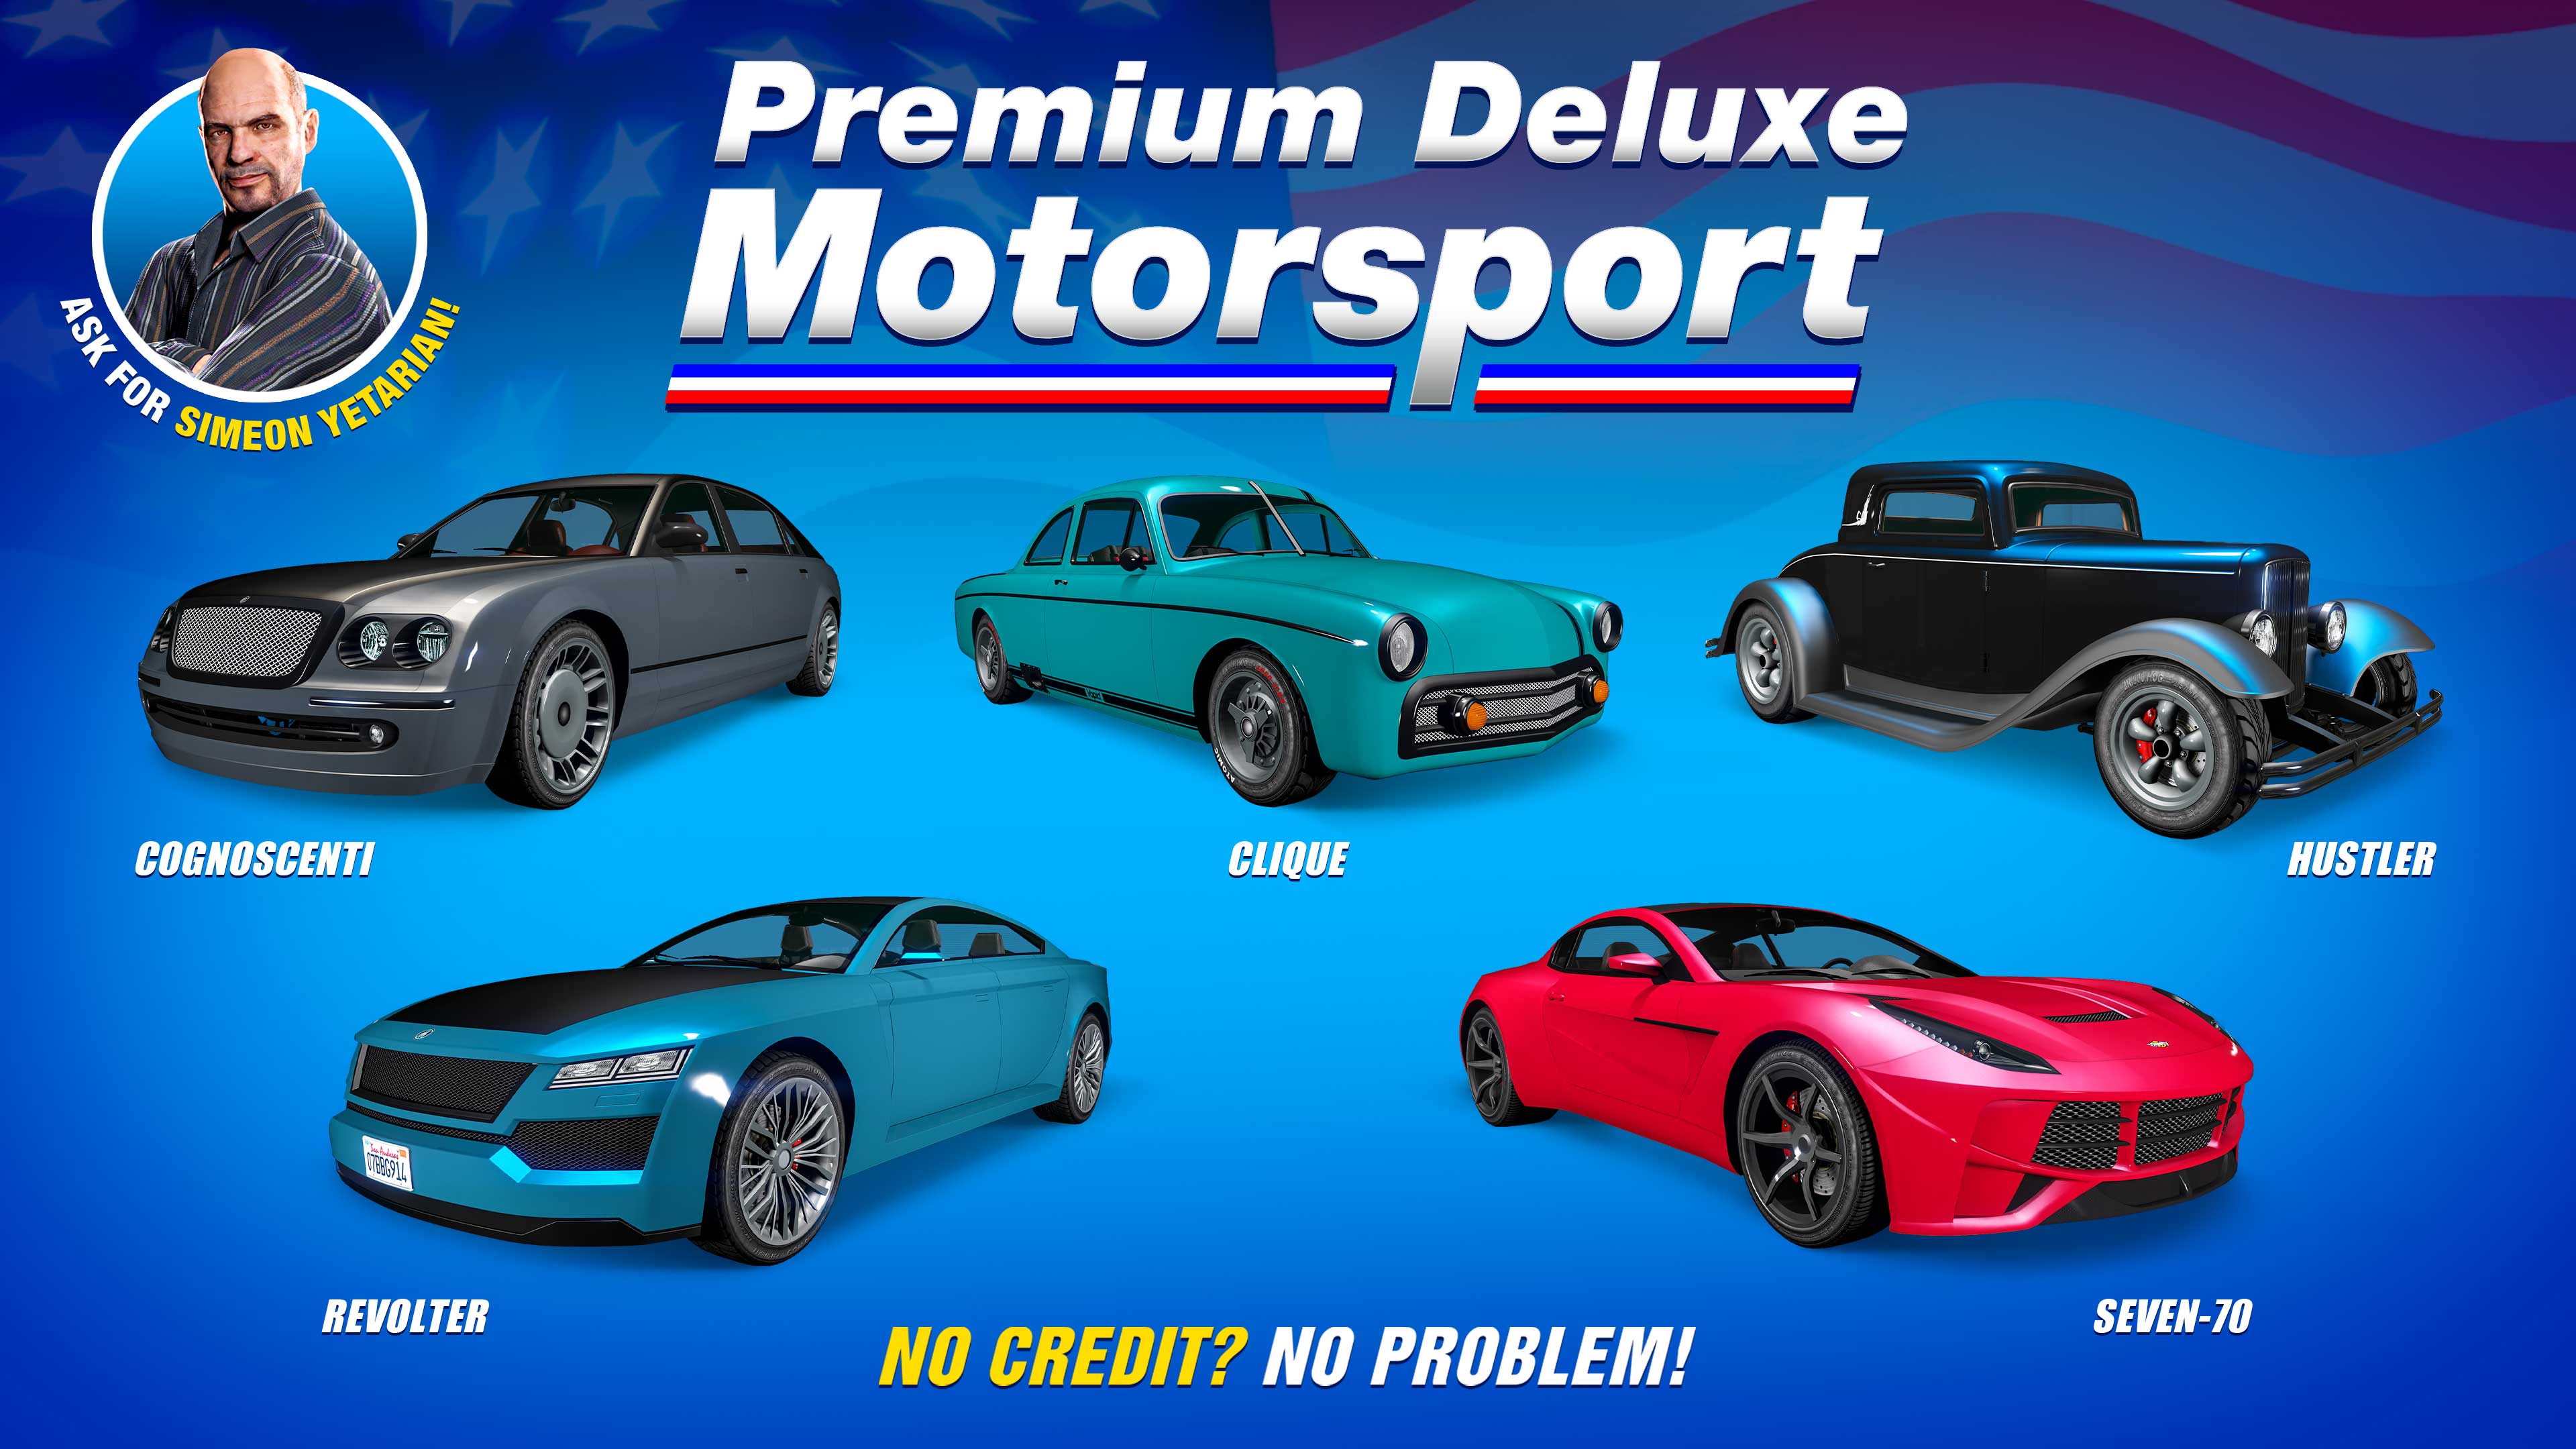 Poster de Premium Automóviles de Lujo que incluye cinco vehículos: Übermacht Revolter, Vapid Clique, Dewbauchee Seven-70, Vapid Hustler, Enus Cognoscenti.